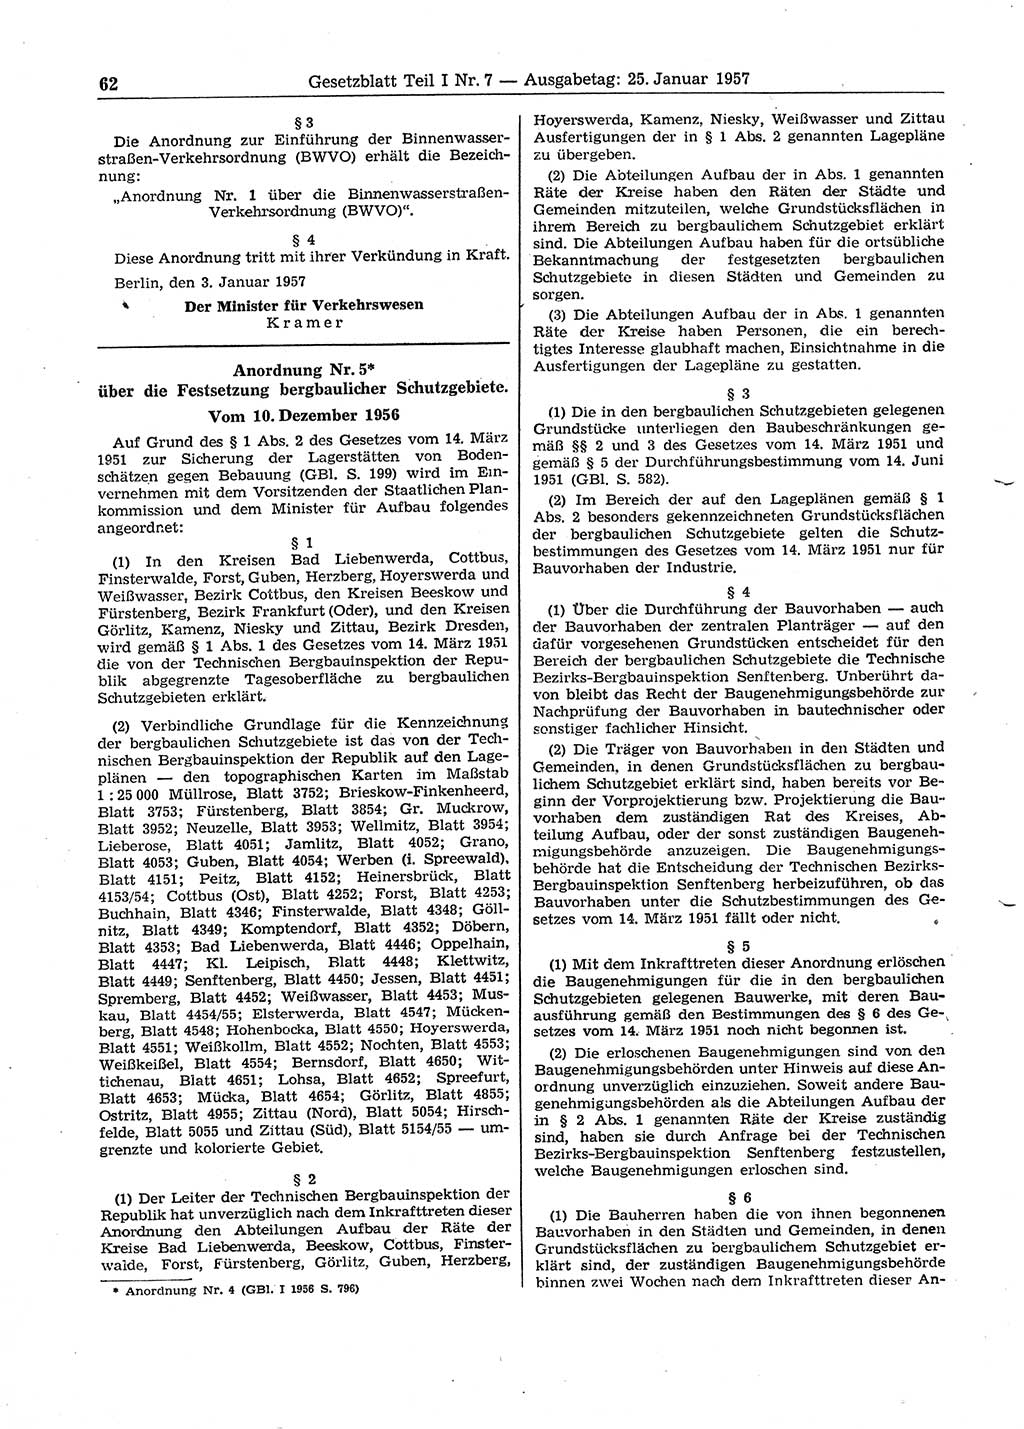 Gesetzblatt (GBl.) der Deutschen Demokratischen Republik (DDR) Teil Ⅰ 1957, Seite 62 (GBl. DDR Ⅰ 1957, S. 62)